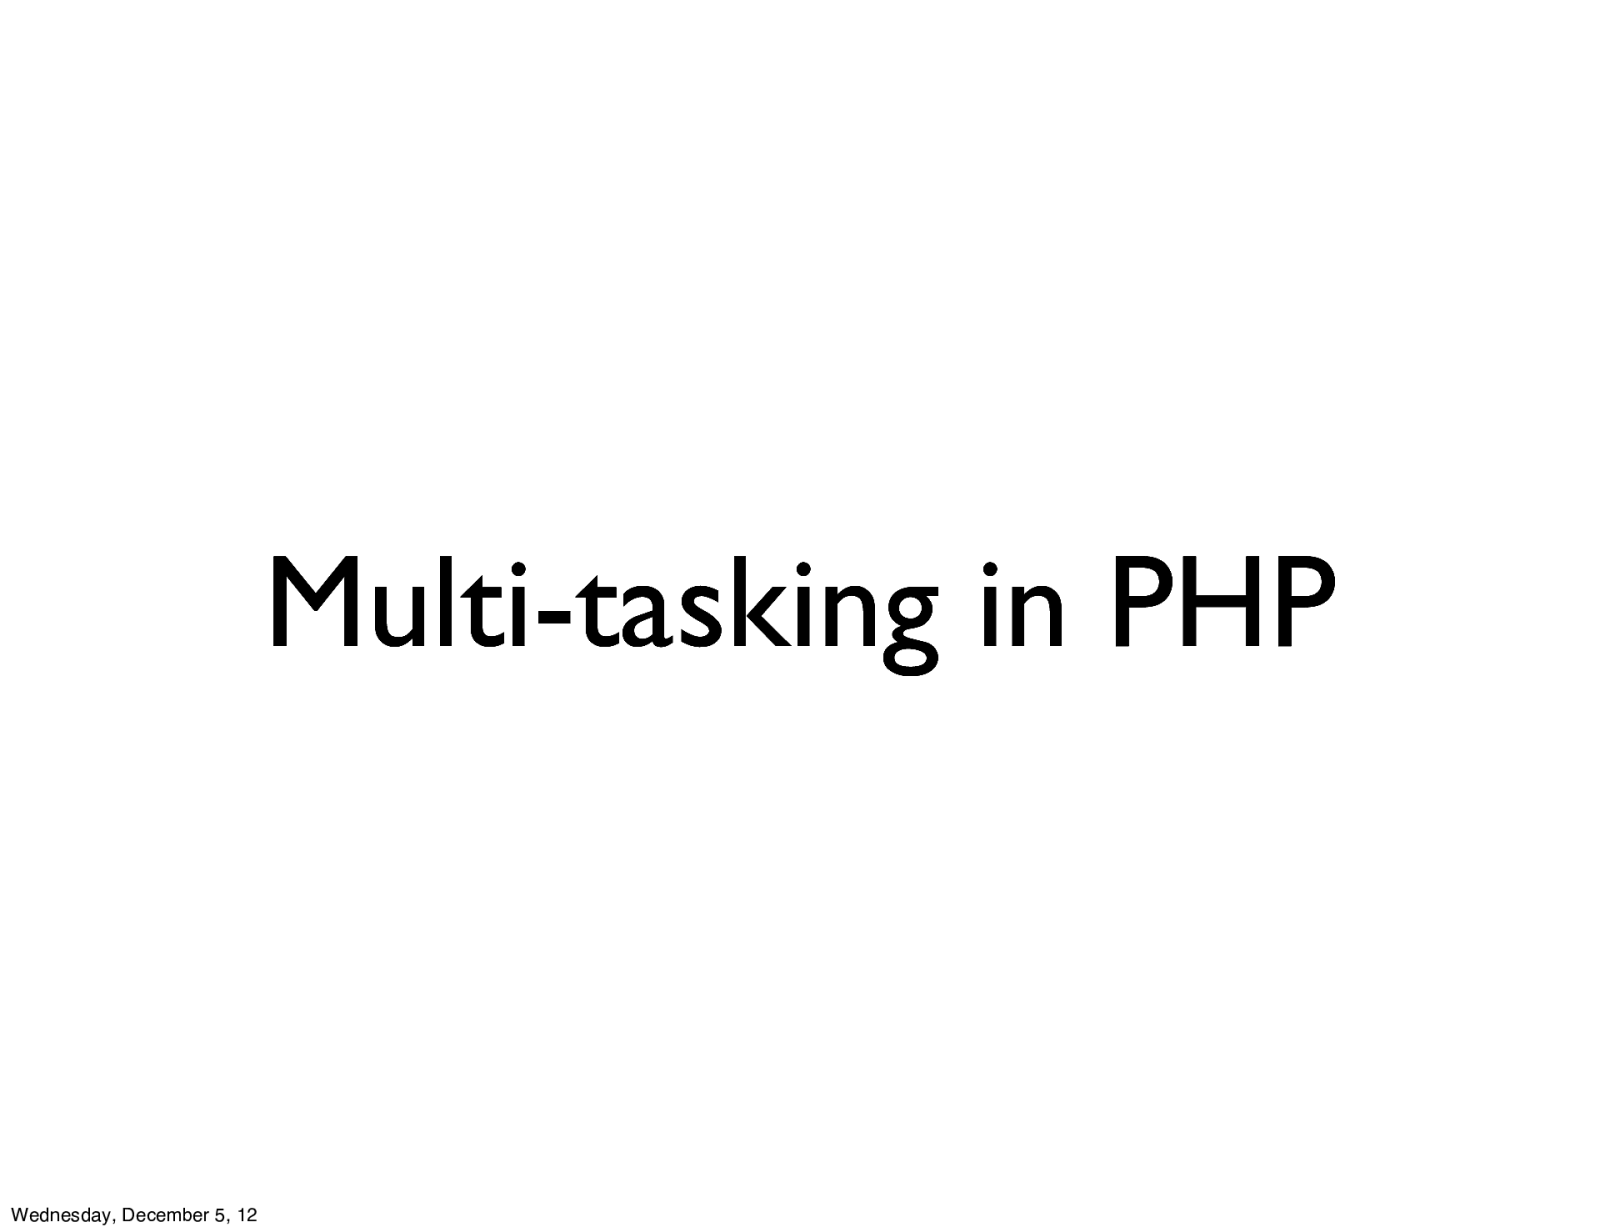 Multi-tasking in PHP